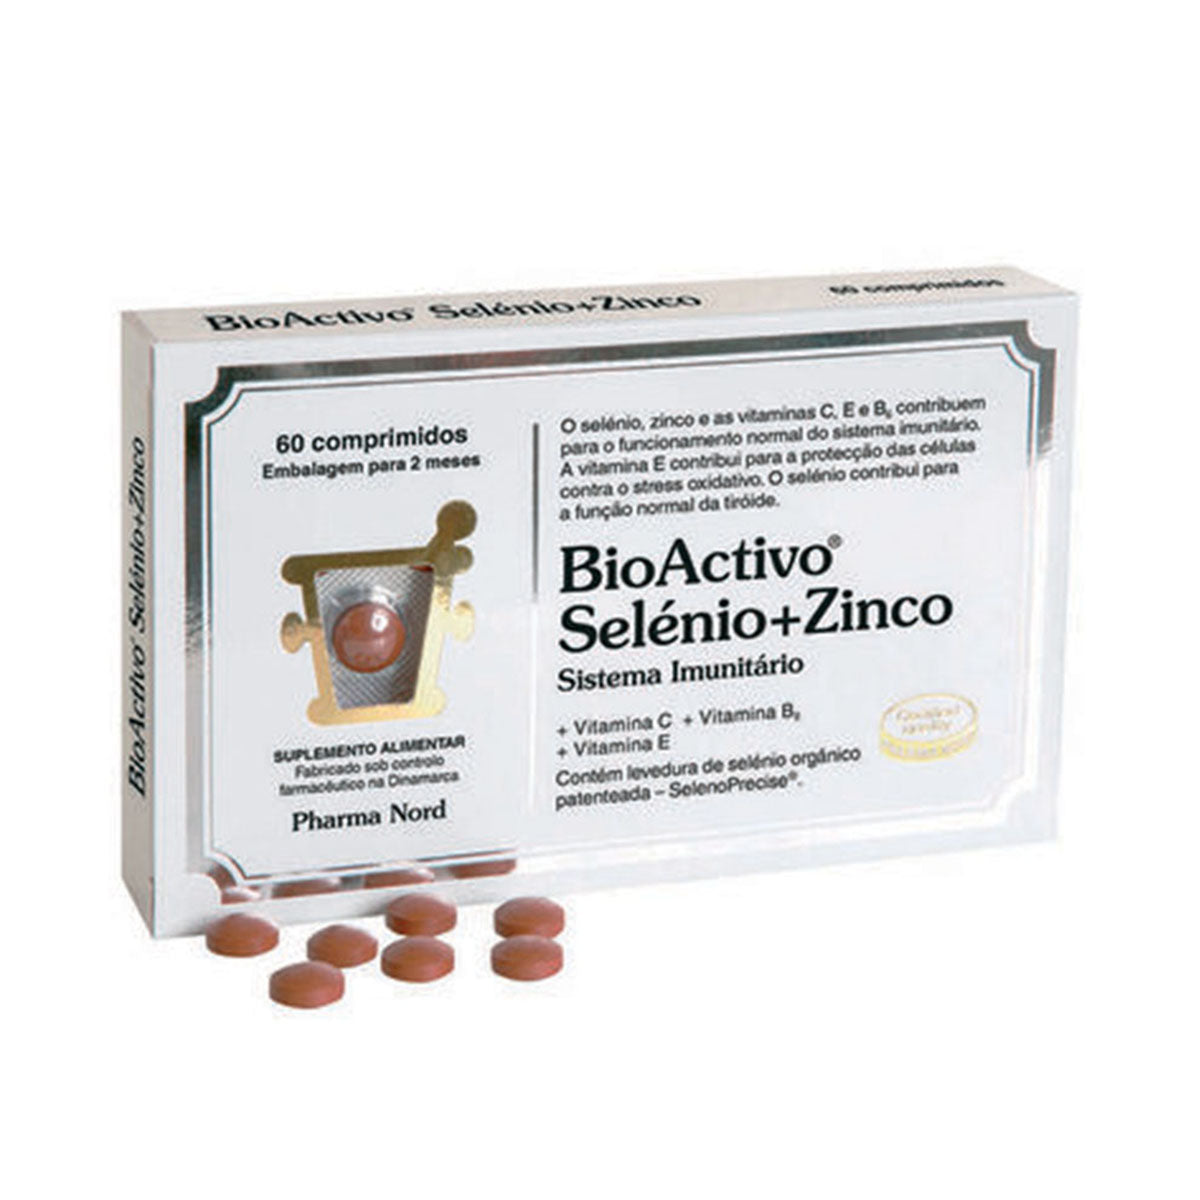 BioActivo Selenium + Zinco 60 Comprimidos - Go Natural